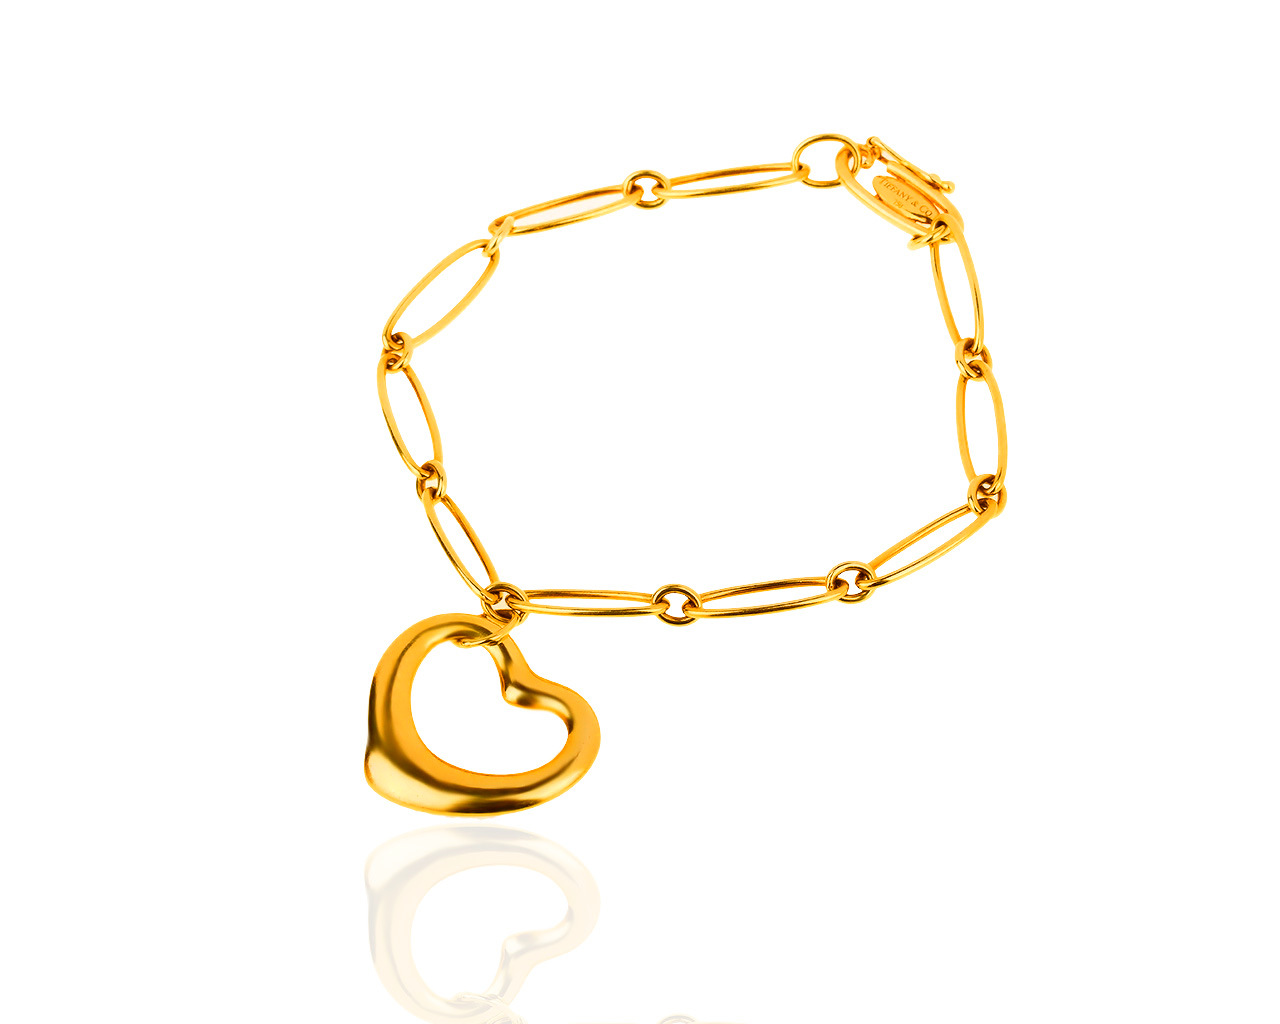 Элегантный золотой браслет Tiffany&Co Paloma Picasso Open Heart 200419/11